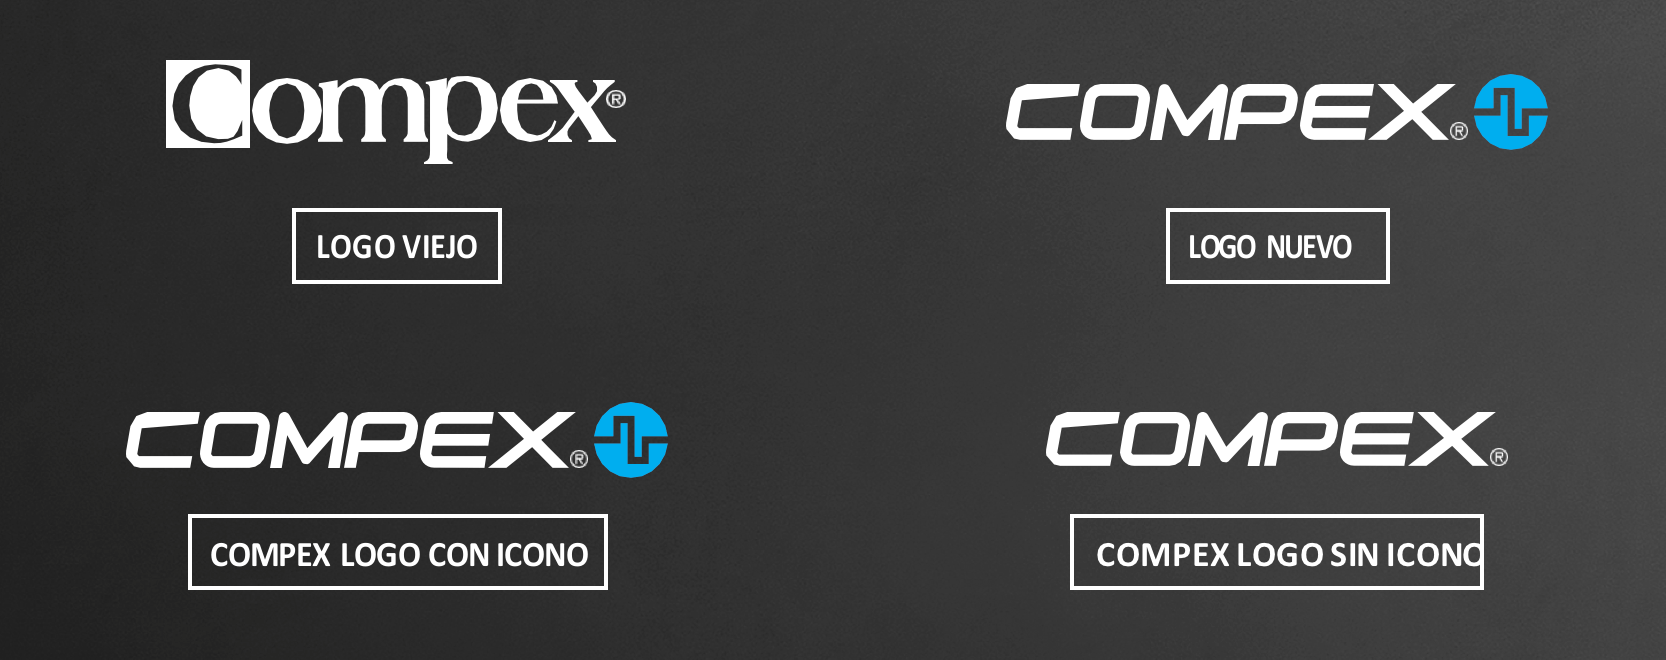 Changements dans le logo Compex